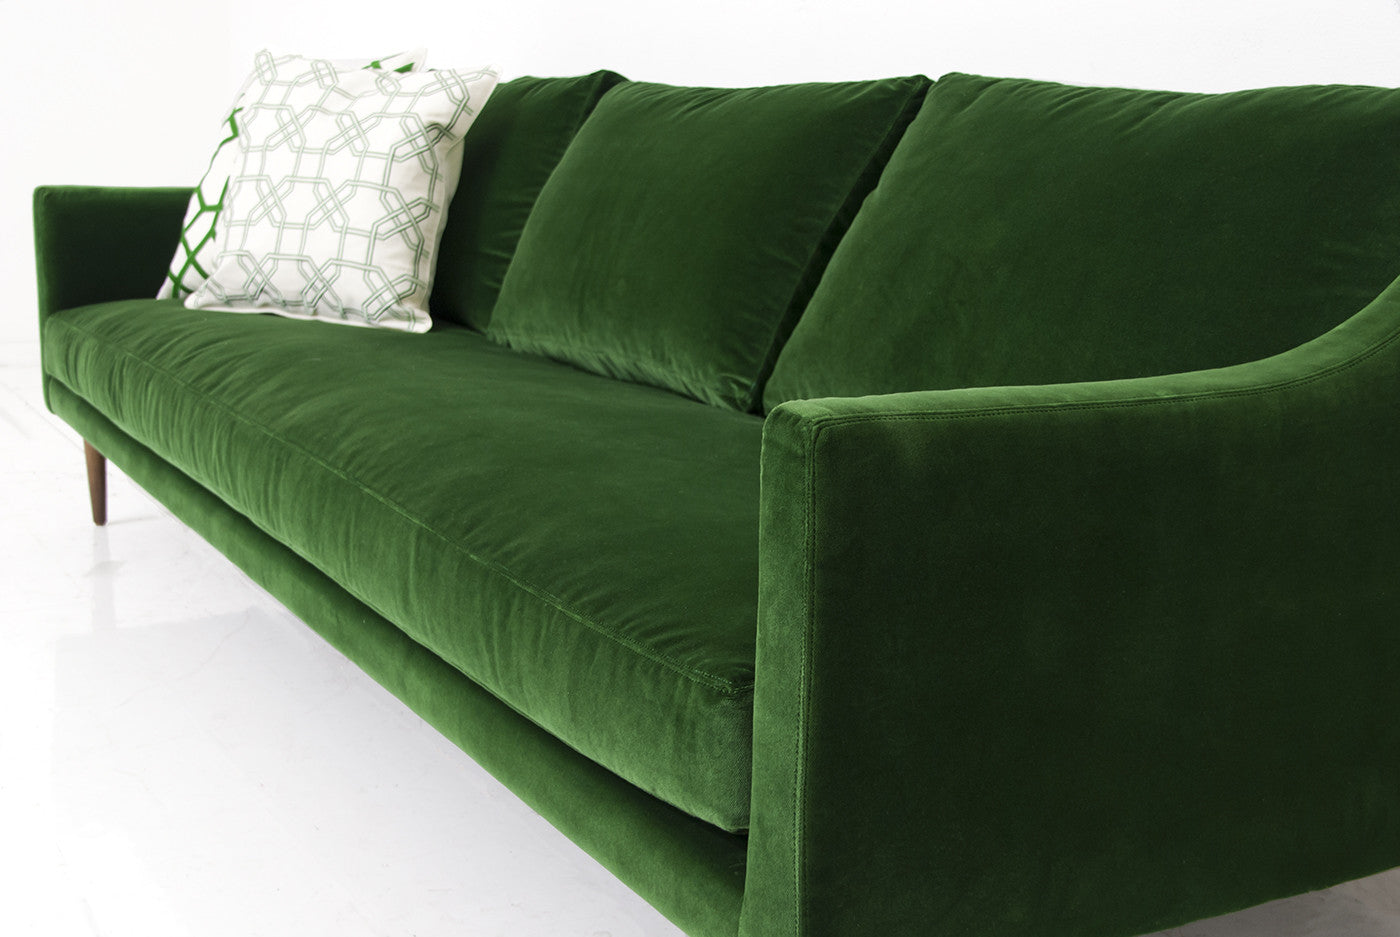 Naples Sofa in Emerald Green Velvet - ModShop